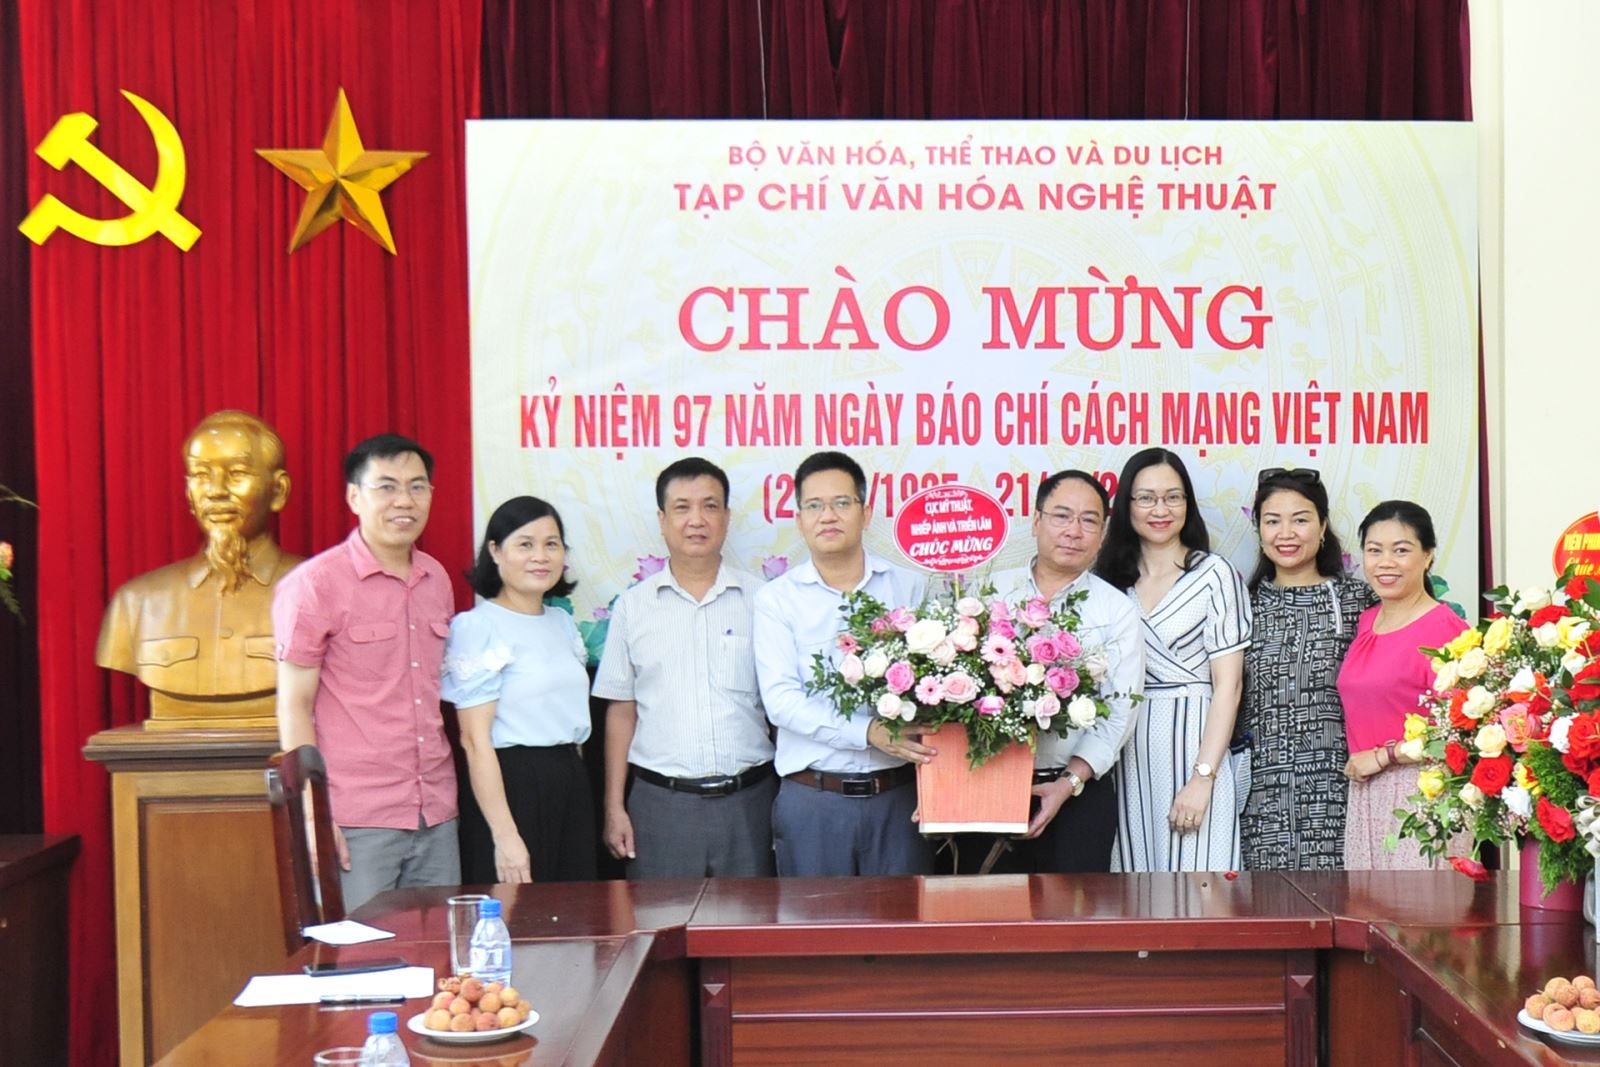 Các cơ quan, đơn vị chúc mừng Tạp chí Văn hóa Nghệ thuật nhân Ngày Báo chí Cách mạng Việt Nam